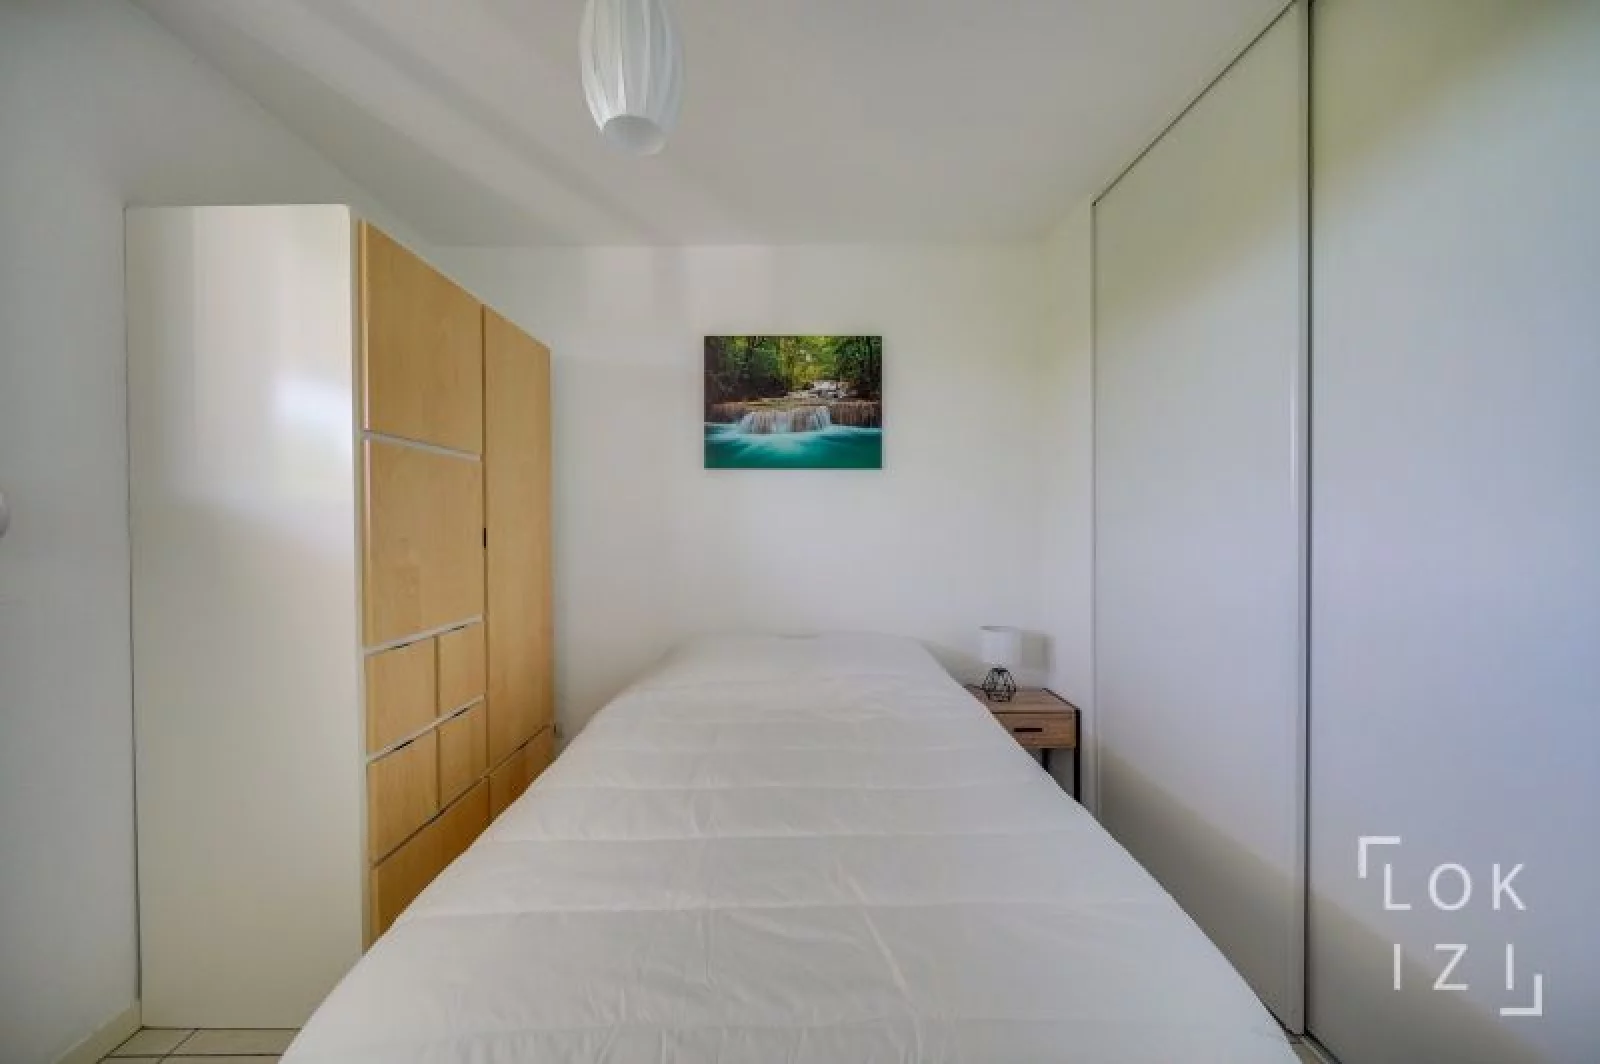 Location appartement meublé 3 pièces 67m² (Bordeaux - Cenon)